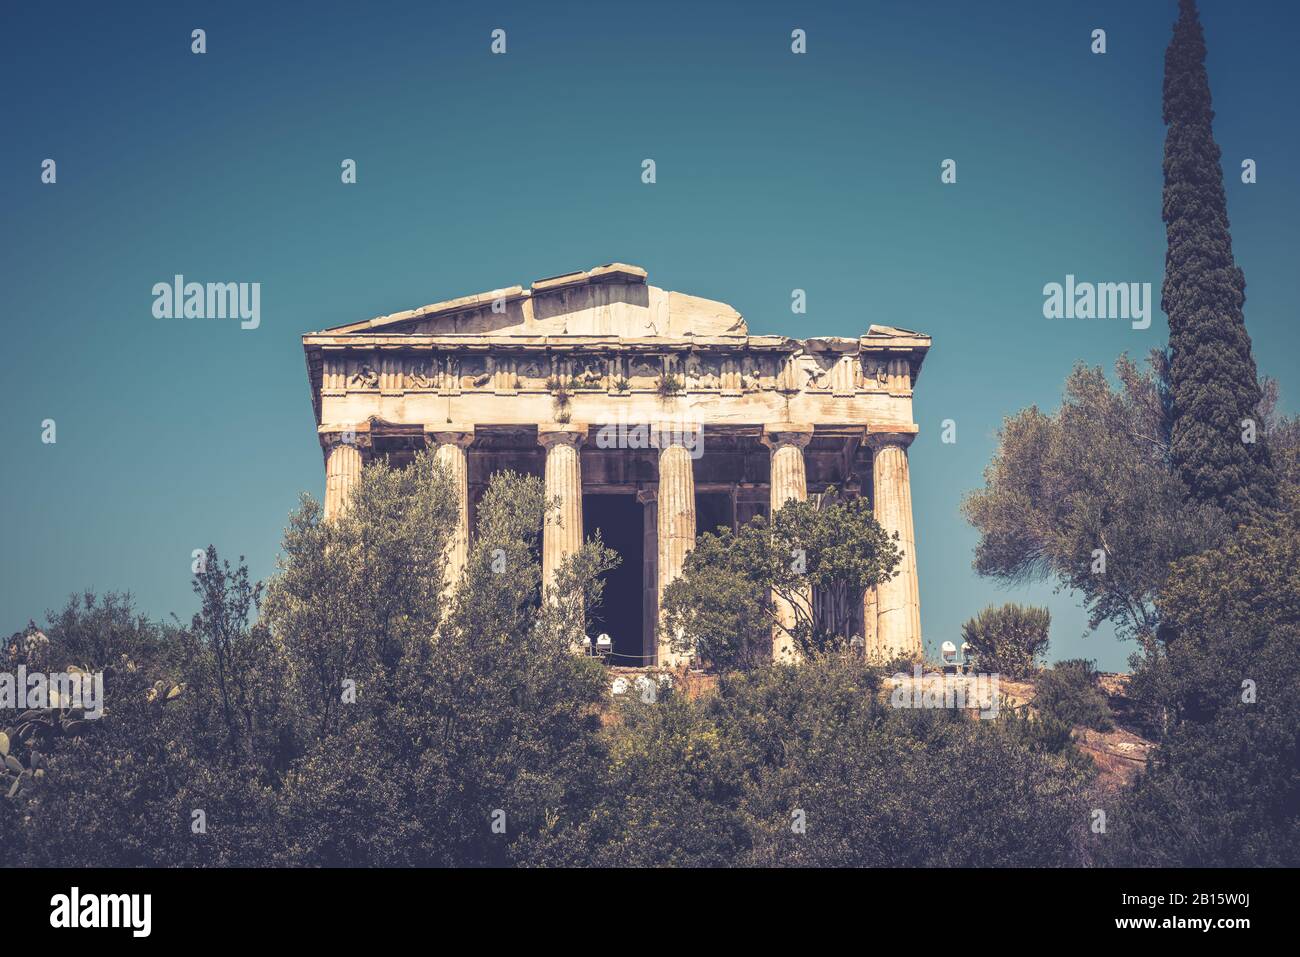 Tempel des Hephaistos in Agora, Athen, Griechenland. Es ist eine der wichtigsten Sehenswürdigkeiten von Athen. Schöne Aussicht auf die antiken griechischen Tempel des Hephaistos in Stockfoto